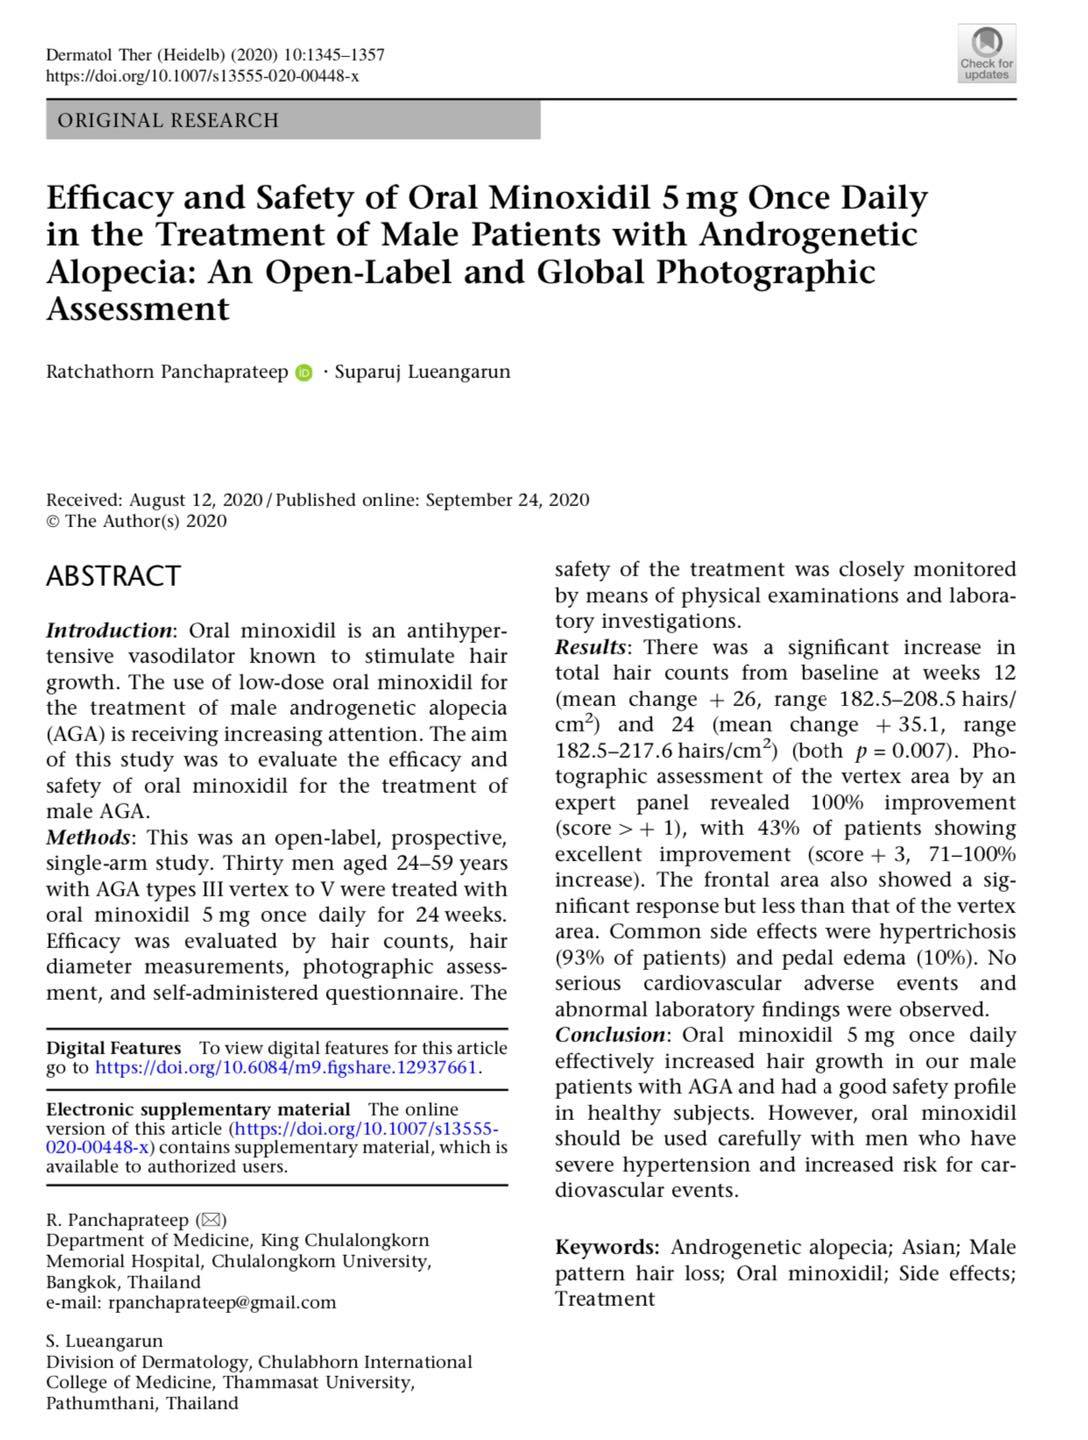 งานวิจัยด้านการดูแลรักษาภาวะผมบางในผู้ชายจากพันธุกรรม โดยการใช้ยาไมน๊อกซิดิวแบบรับทาน รุจ Oral Minoxidil in the Treatment of male AGA โดย ผศ. นพ. ศุภะรุจ เลื่องอรุณ (หมอรุจ) และ รศ.ดร.พญ. รัชต์ธร ปัญจประทีป Oral Minoxidil in the Treatment of male AGA